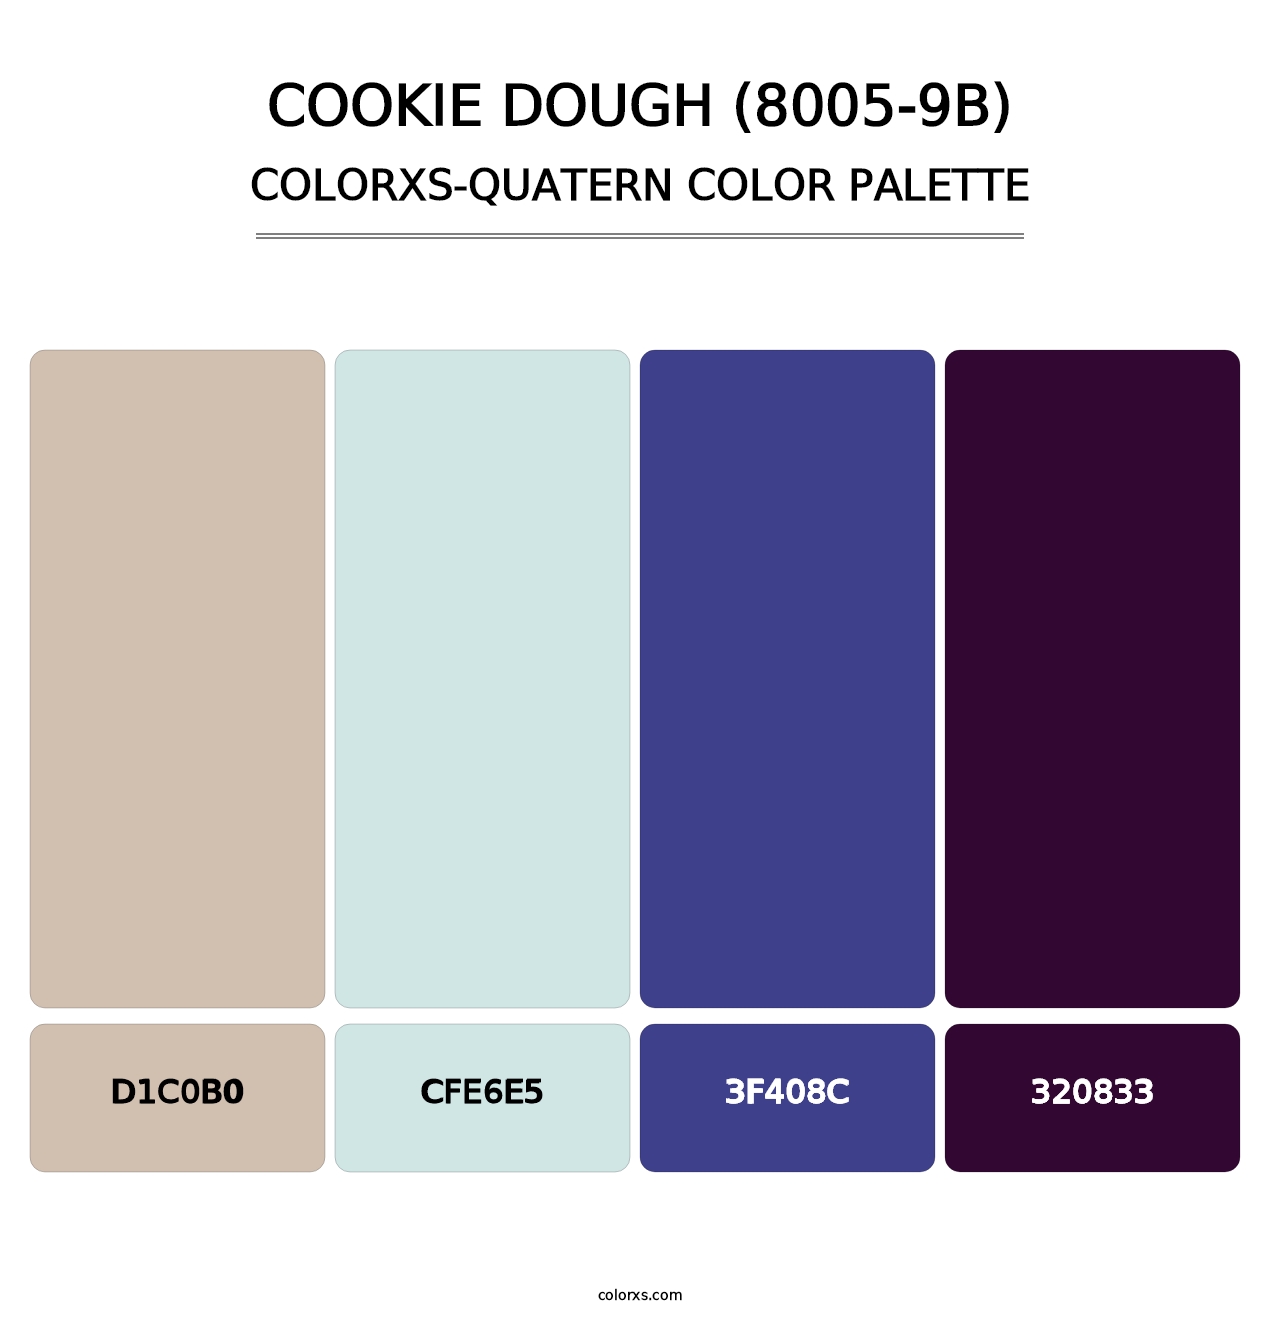 Cookie Dough (8005-9B) - Colorxs Quatern Palette